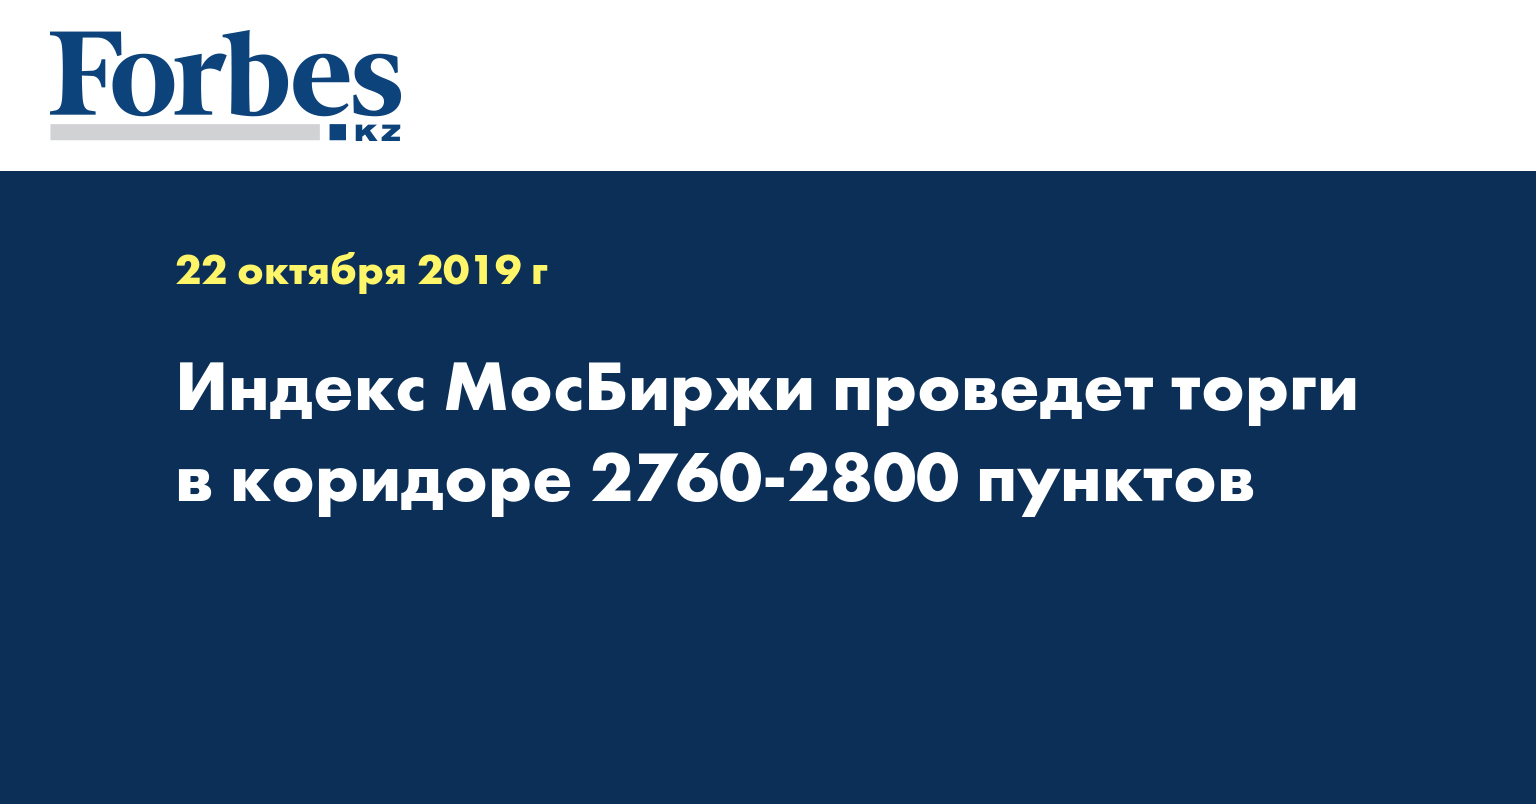 Индекс МосБиржи проведет торги в коридоре 2760-2800 пунктов